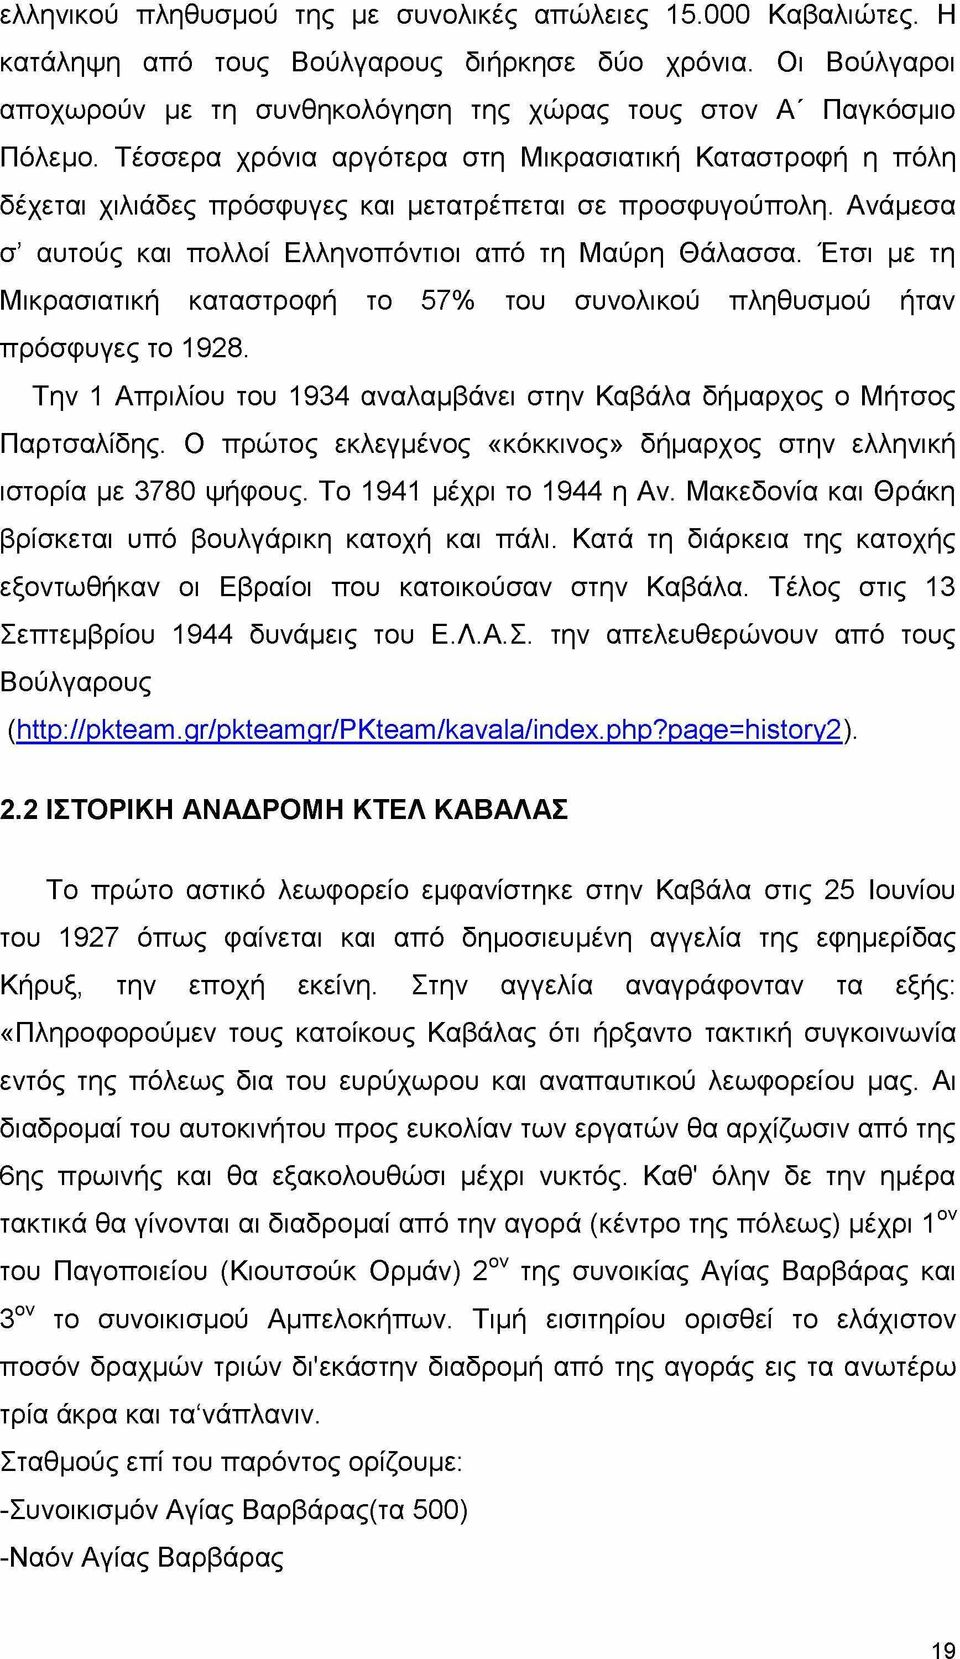 Έτσι με τη Μικρασιατική καταστροφή το 57% του συνολικού πληθυσμού ήταν πρόσφυγες το 1928. Την 1 Απριλίου του 1934 αναλαμβάνει στην Καβάλα δήμαρχος ο Μήτσος Παρτσαλίδης.